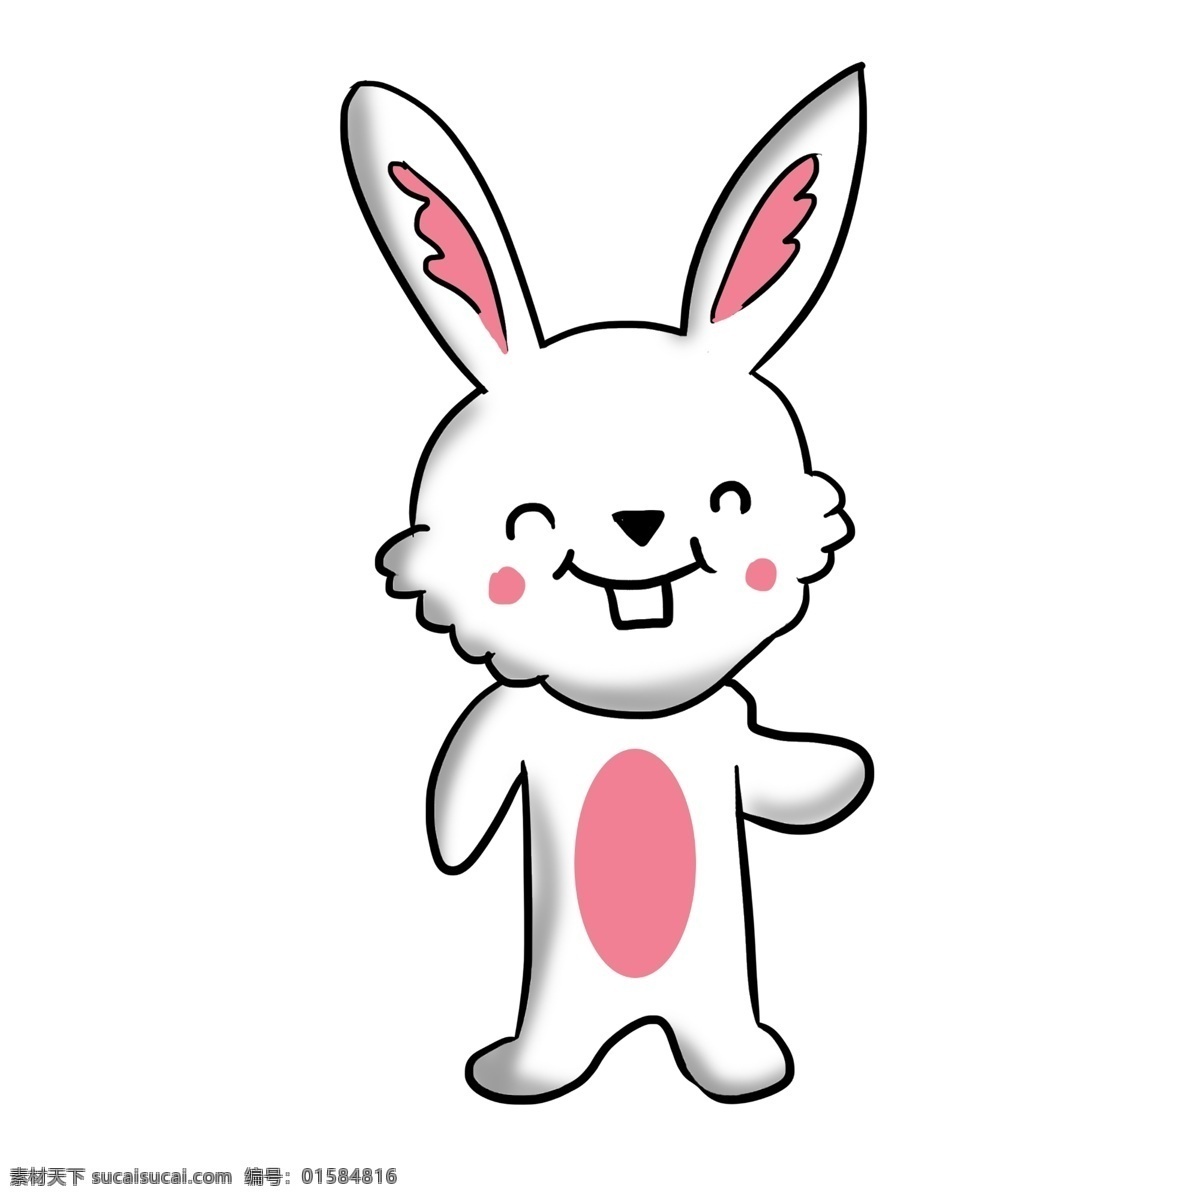 手绘 开心 兔子 插画 卡通插画 手绘兔子插画 开心的兔子 拟人的兔子 粉色的肚子 长长的门牙